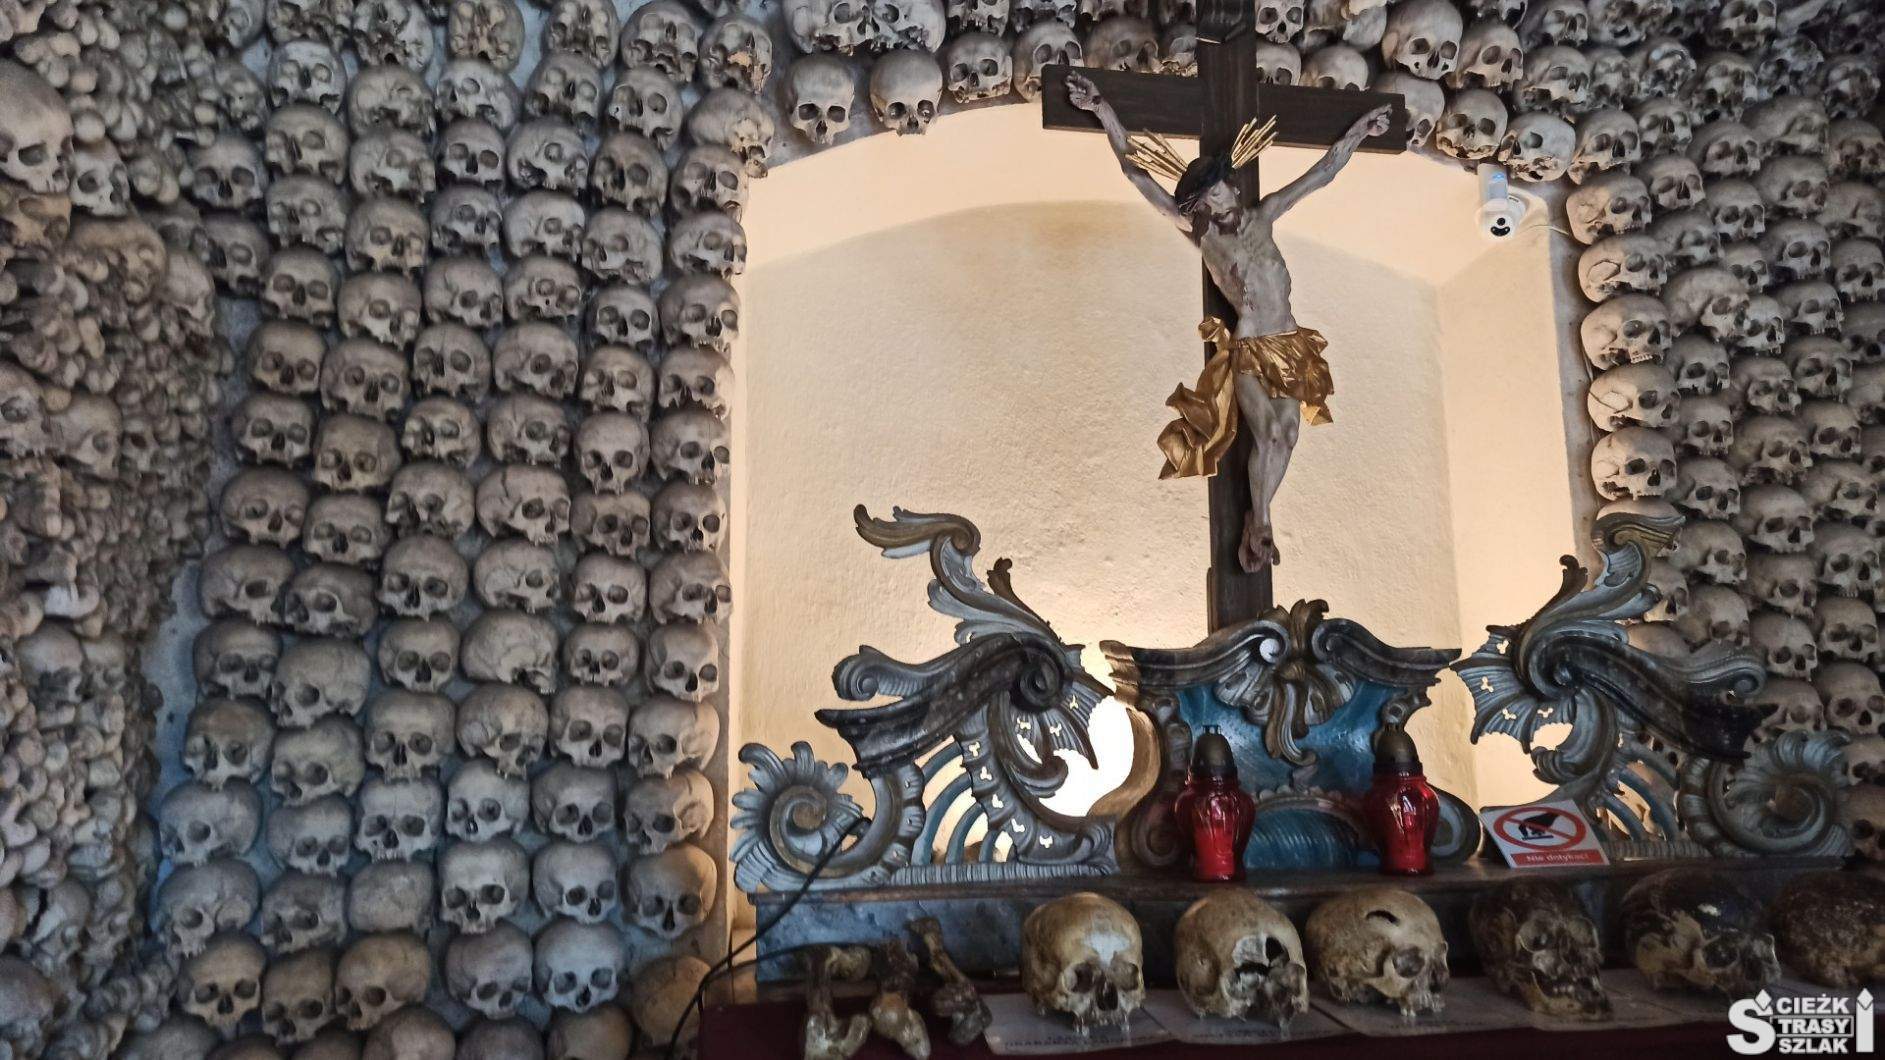 Ludzkie czaszki z historią przed krzyżem z Chrystusem na ołtarzu skupiającym wzrok tysięcy czaszek